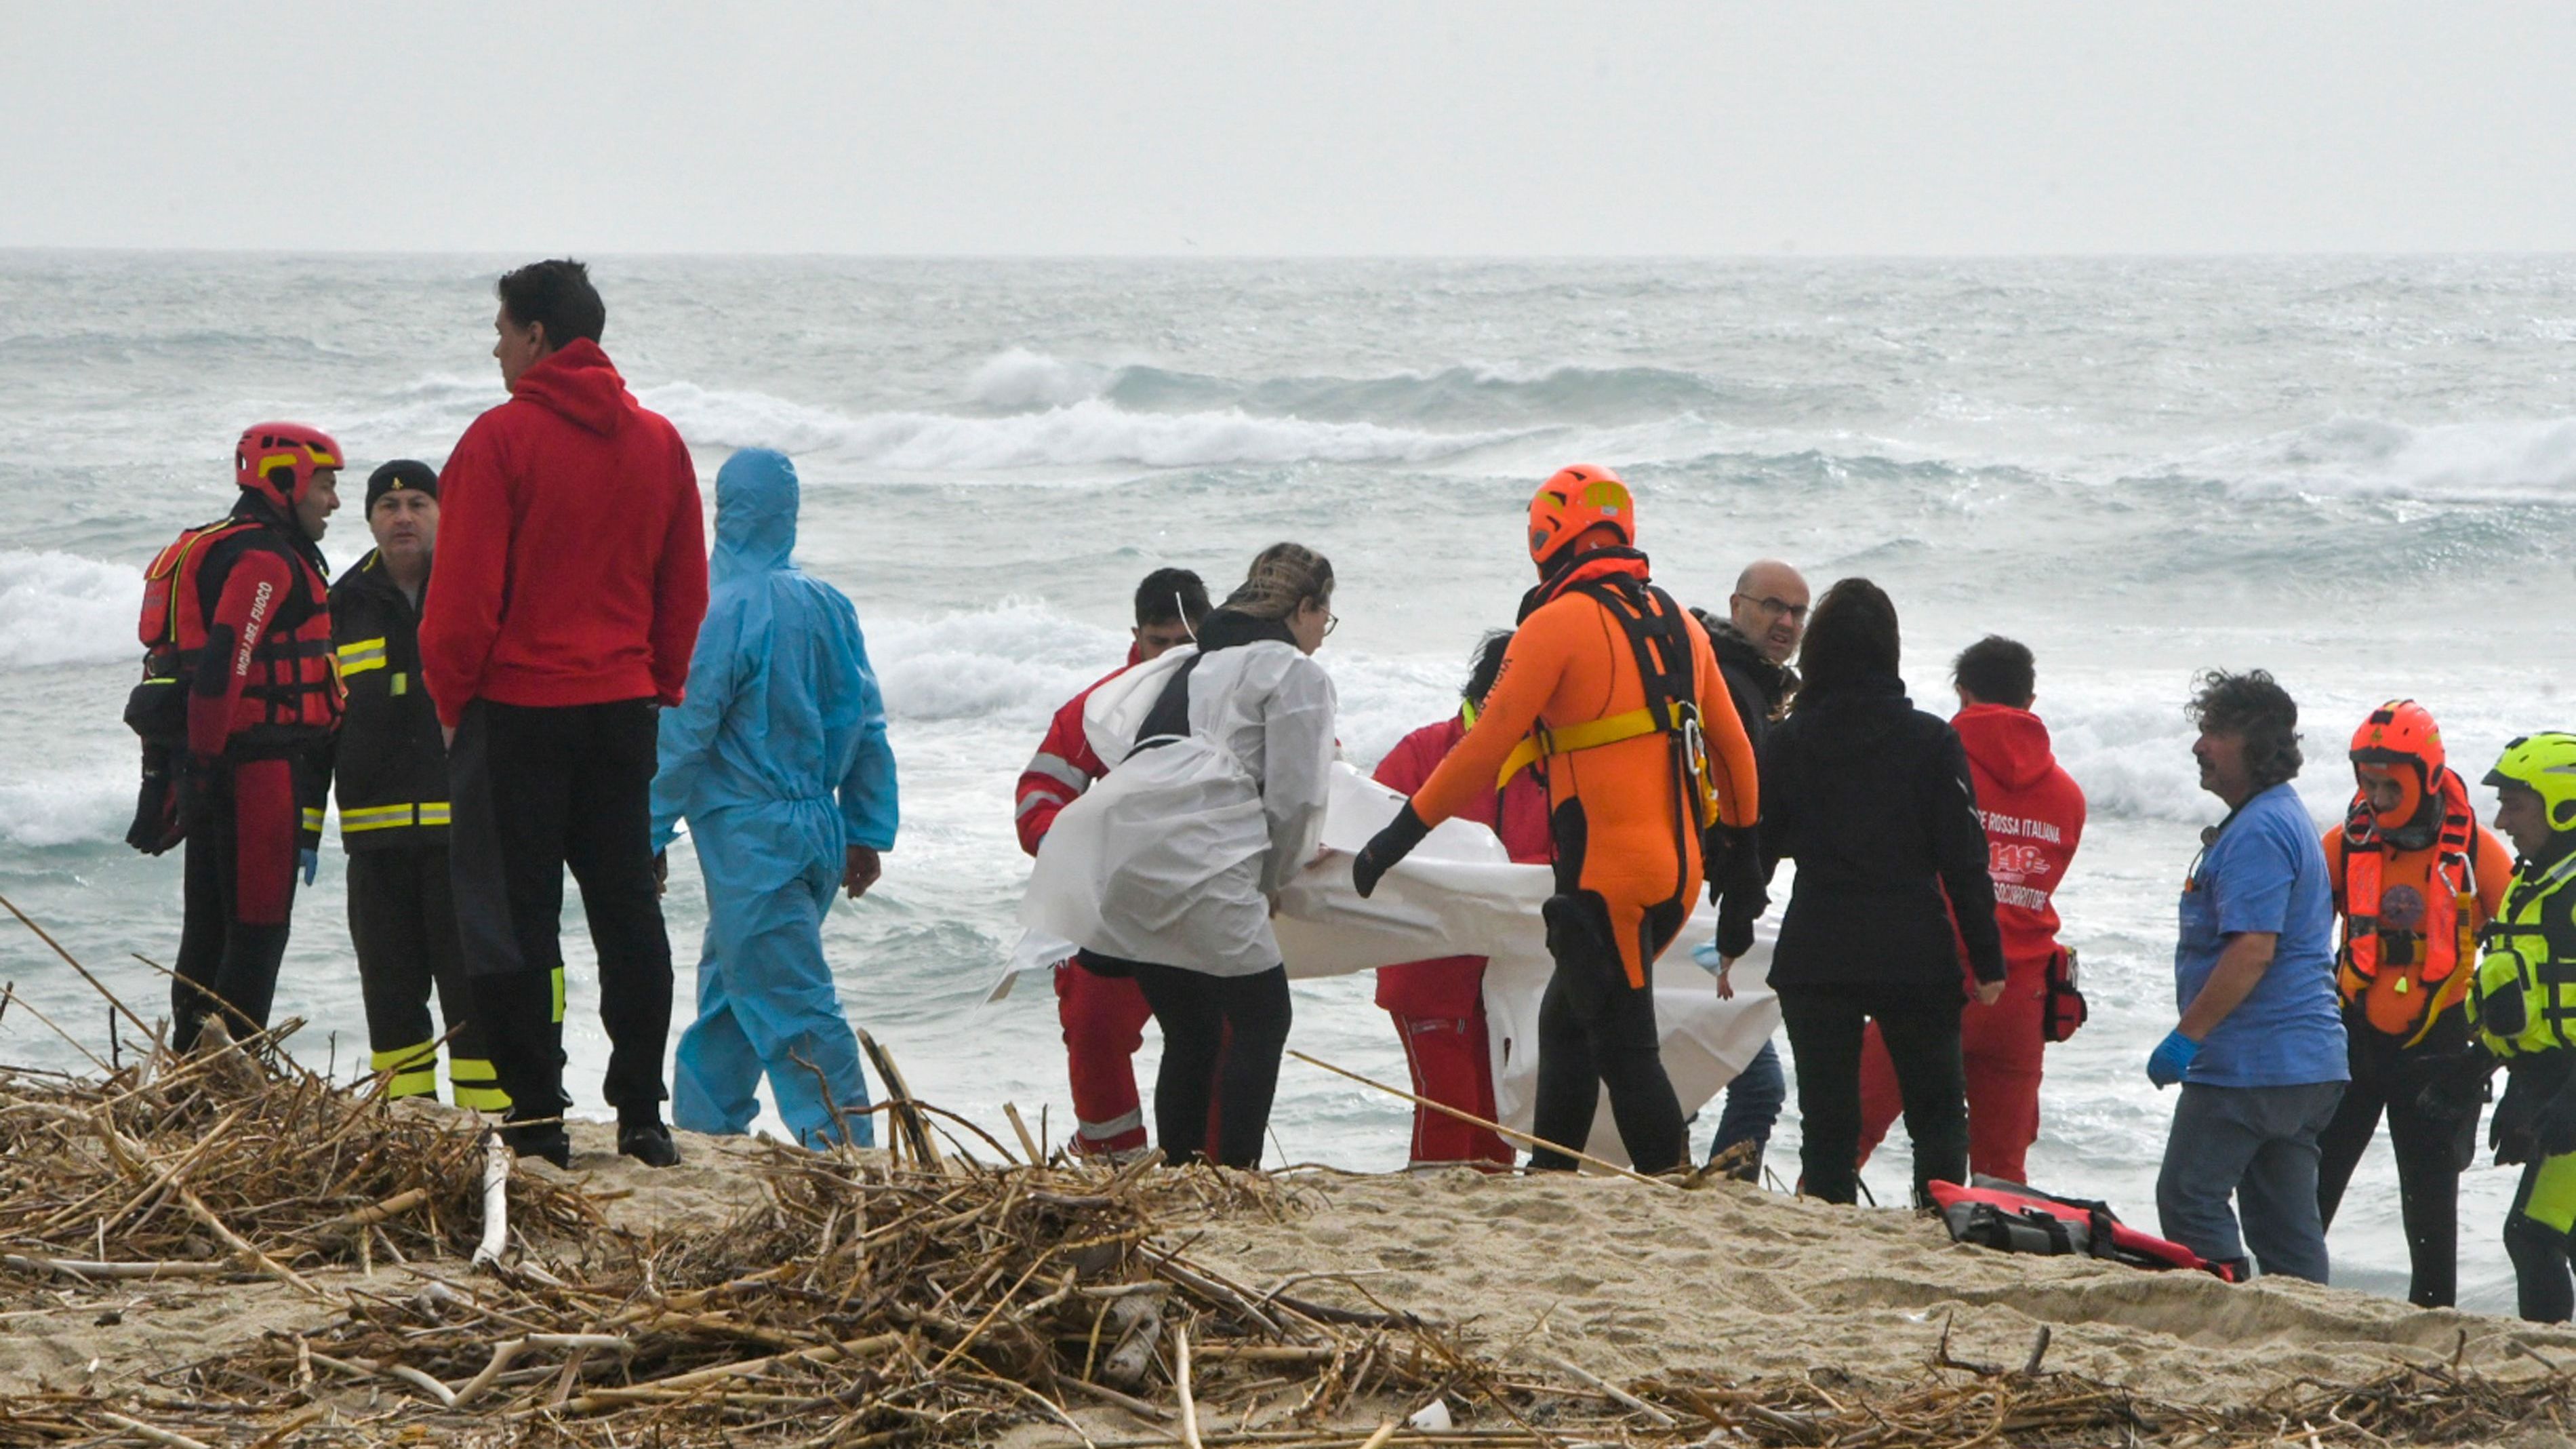 Rettungskräfte bergen eine Leiche an einem Strand in der Nähe von Cutro, Süditalien, nachdem ein Boot mit Migranten bei rauer See auseinandergebrochen war.